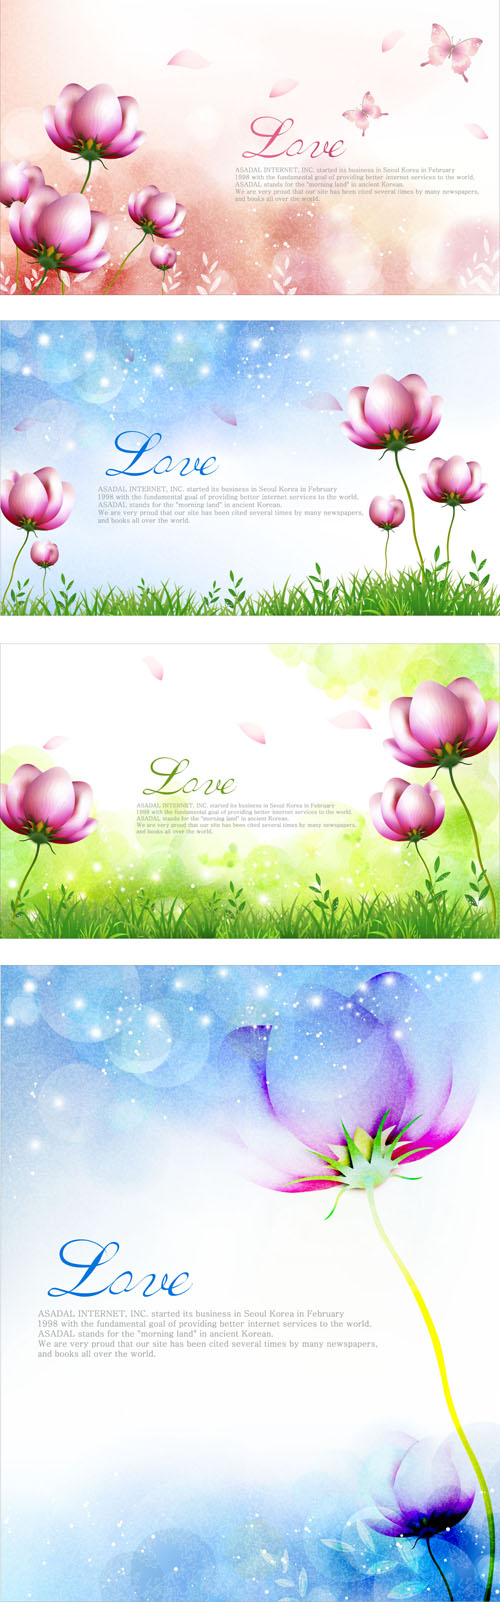 Elegant dream flowers background vector 03 flowers flower Dream flower dream background vector background   